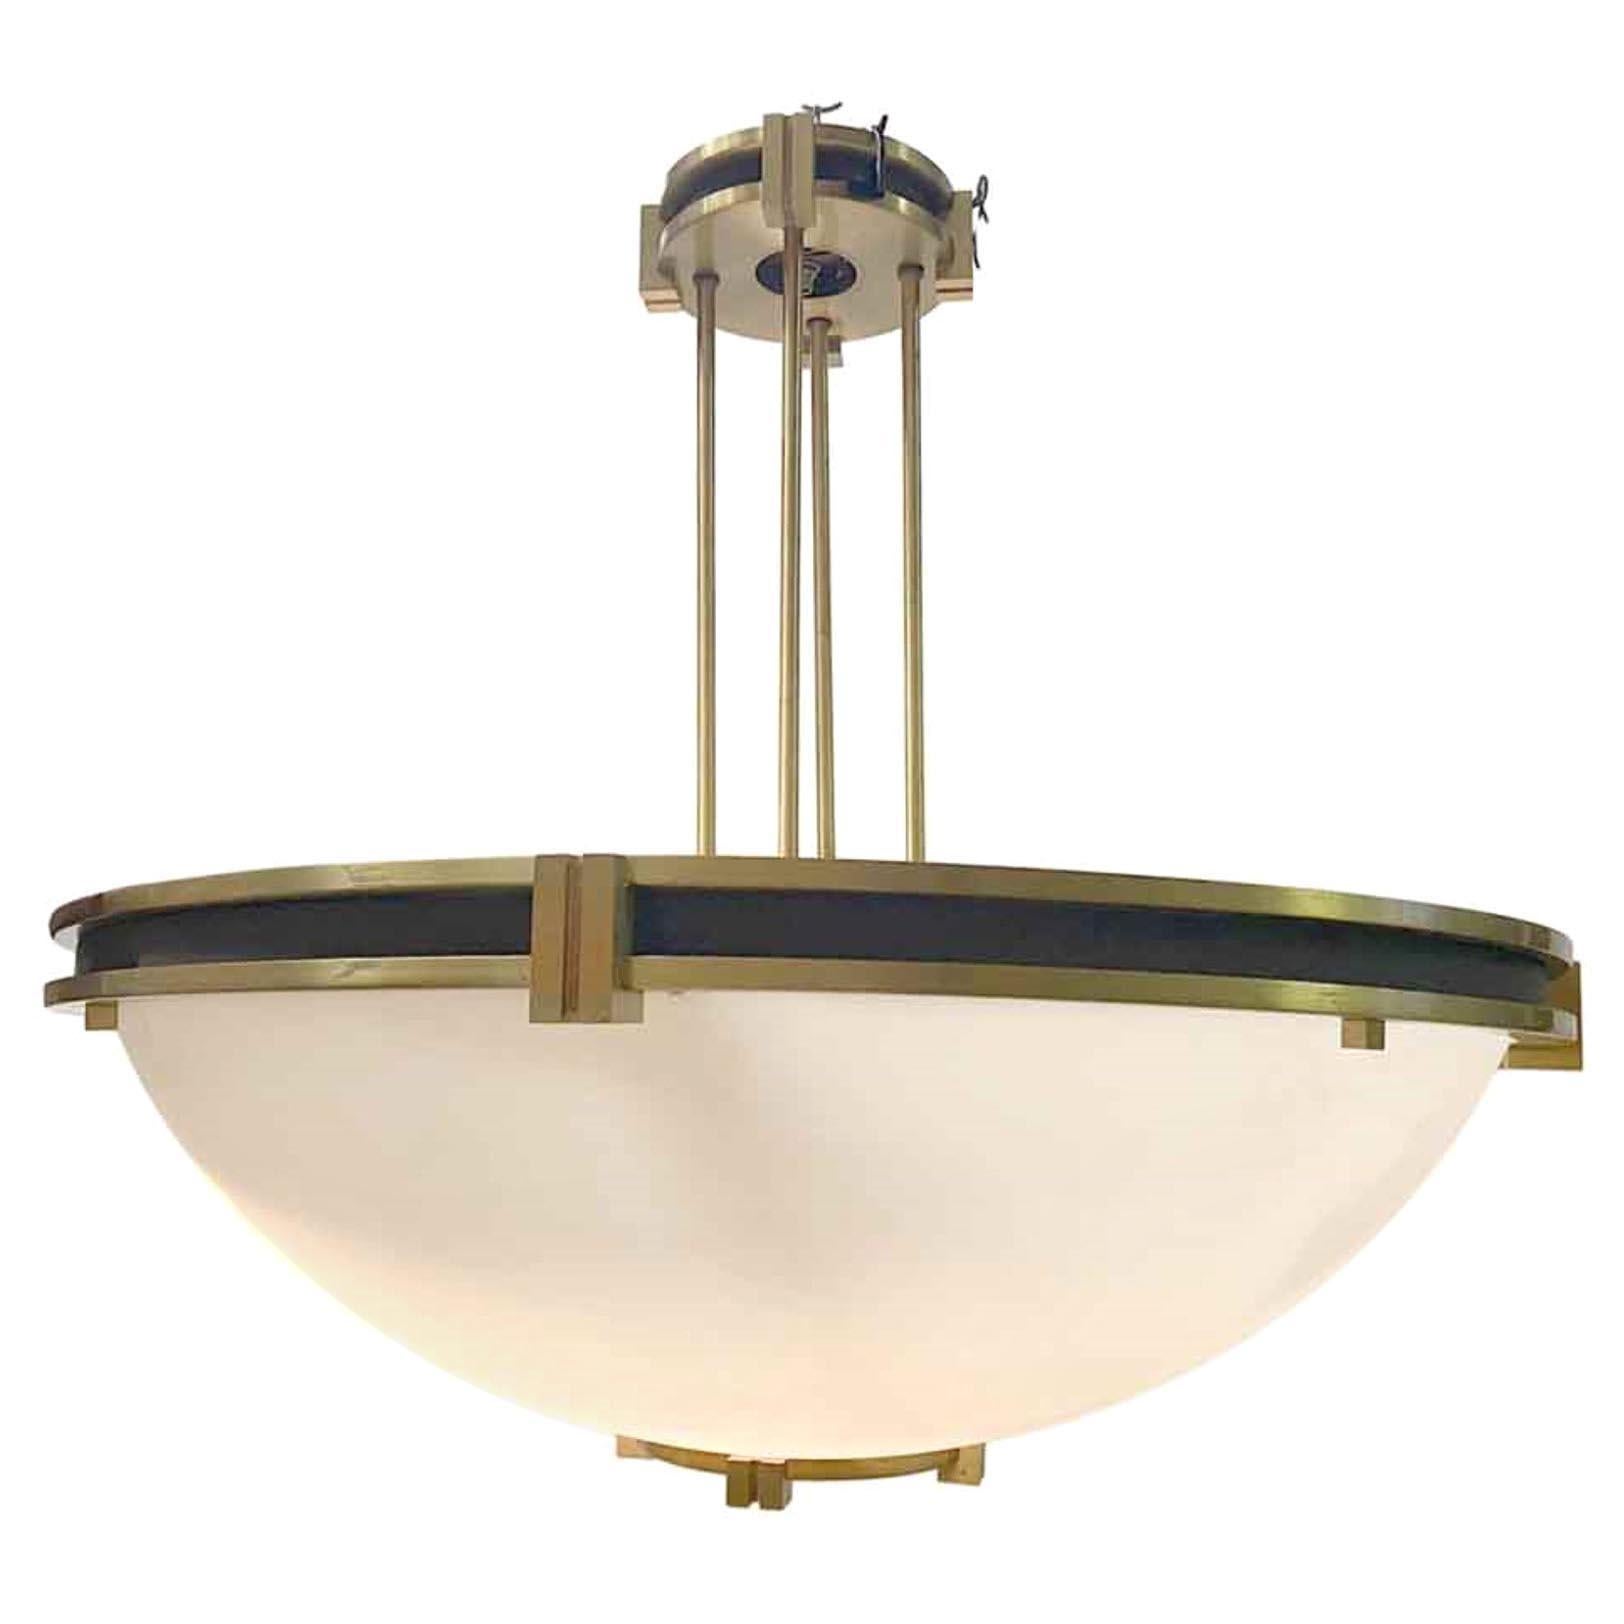 1950s Art Deco Brass Dish Pendant Light from a Manhattan Bank